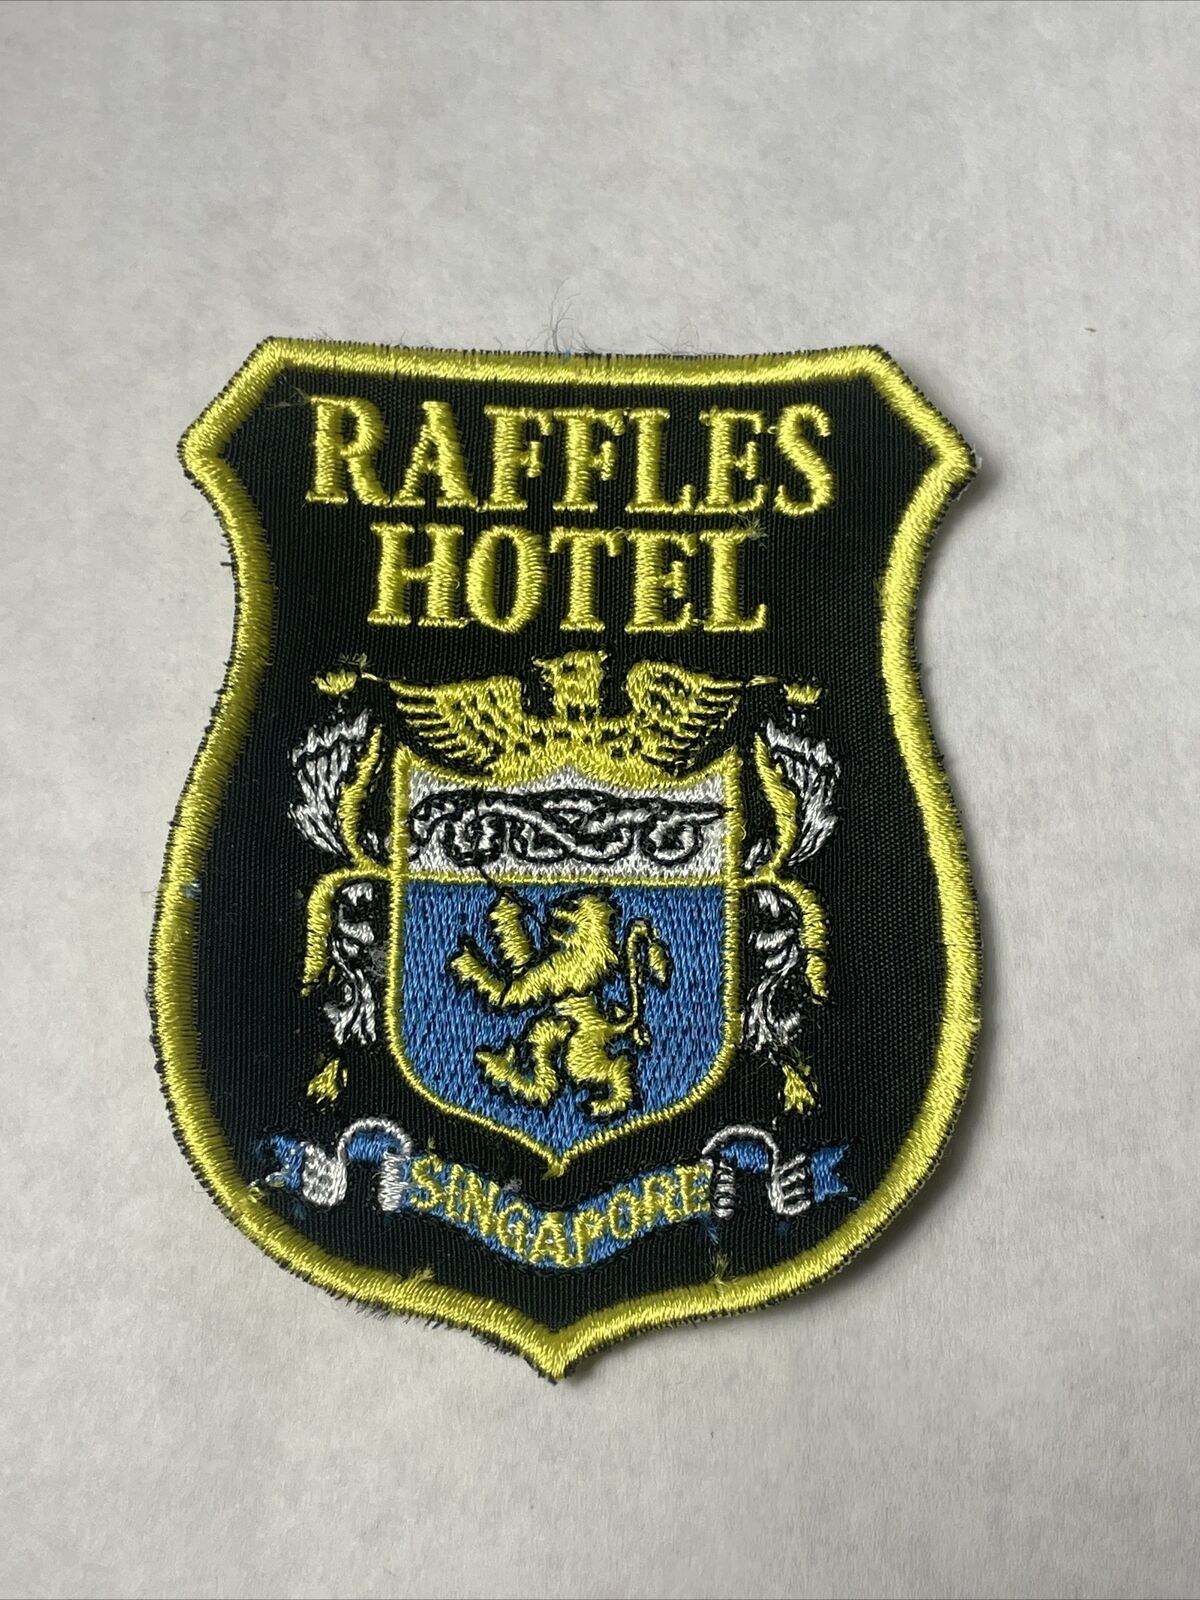 Vintage Raffles Hotel Singapore Patch Badge Travel Souvenir